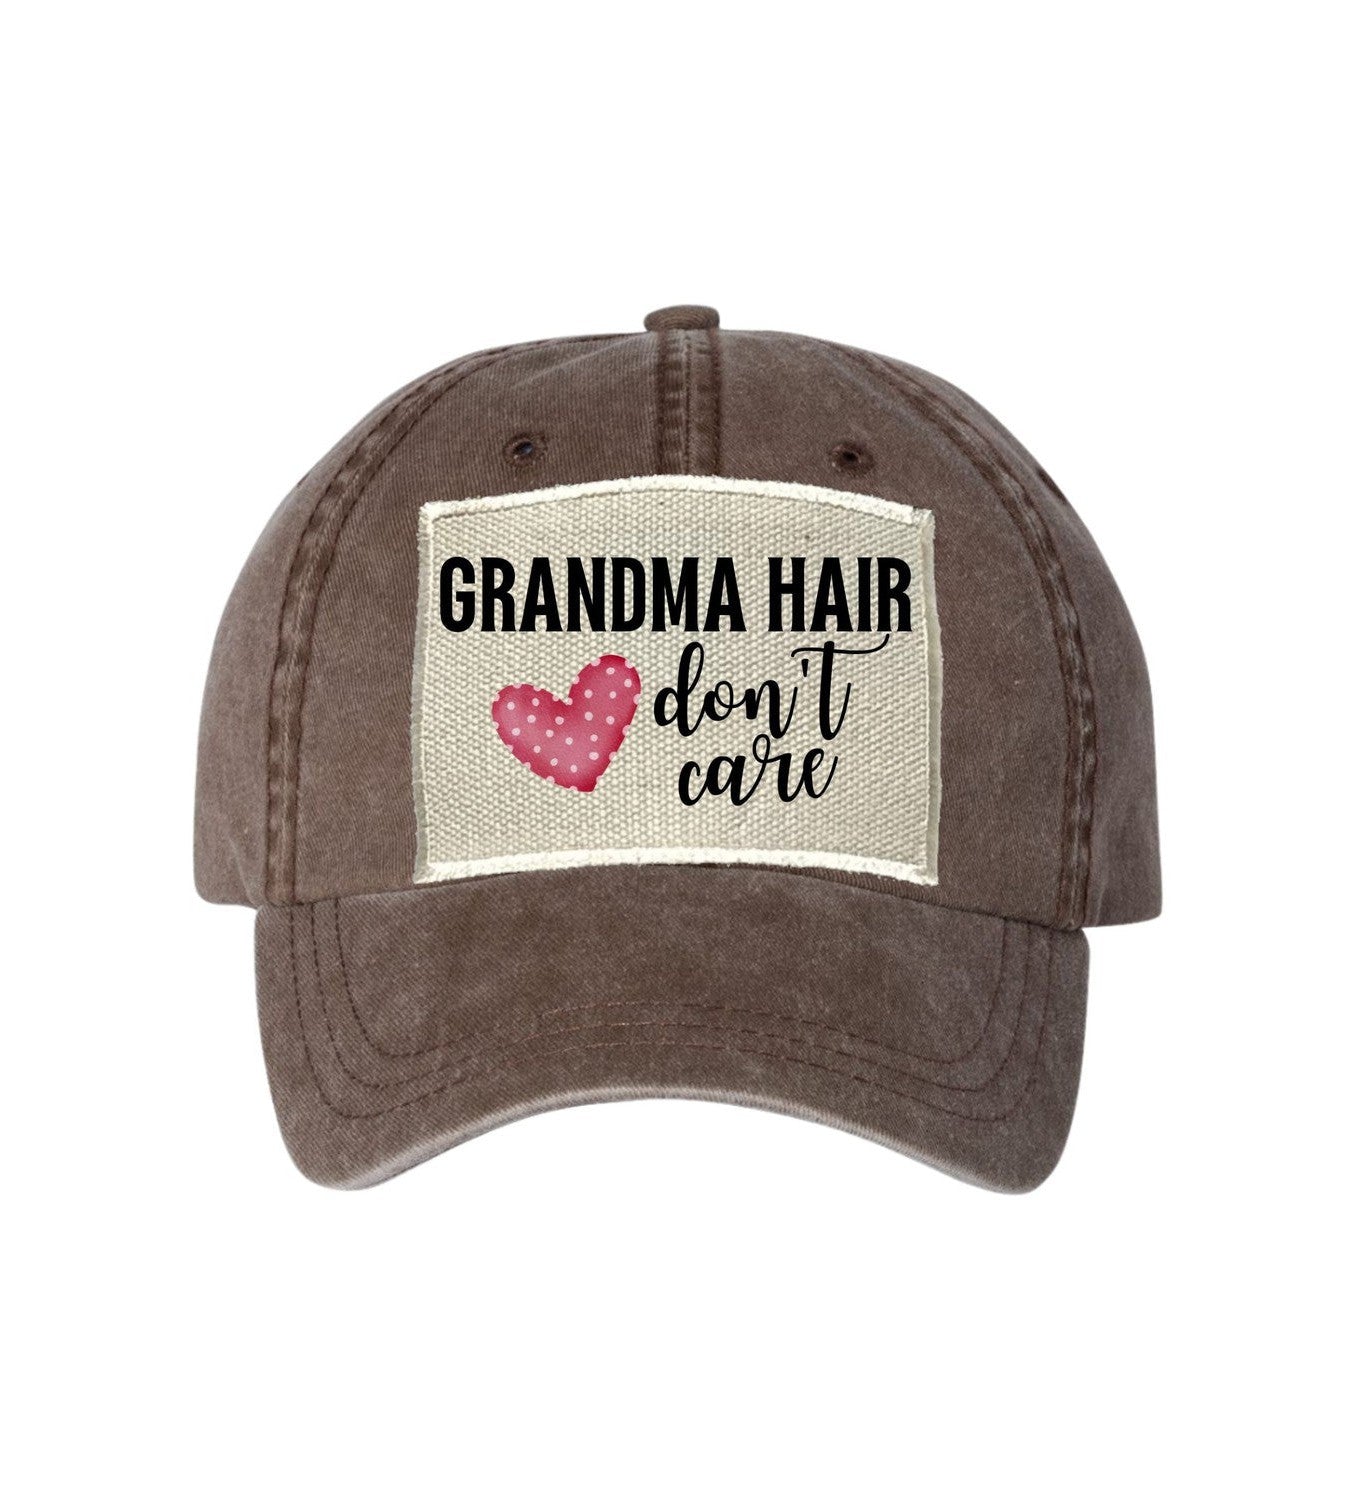 Grandma Hair Don't Care Ball Cap